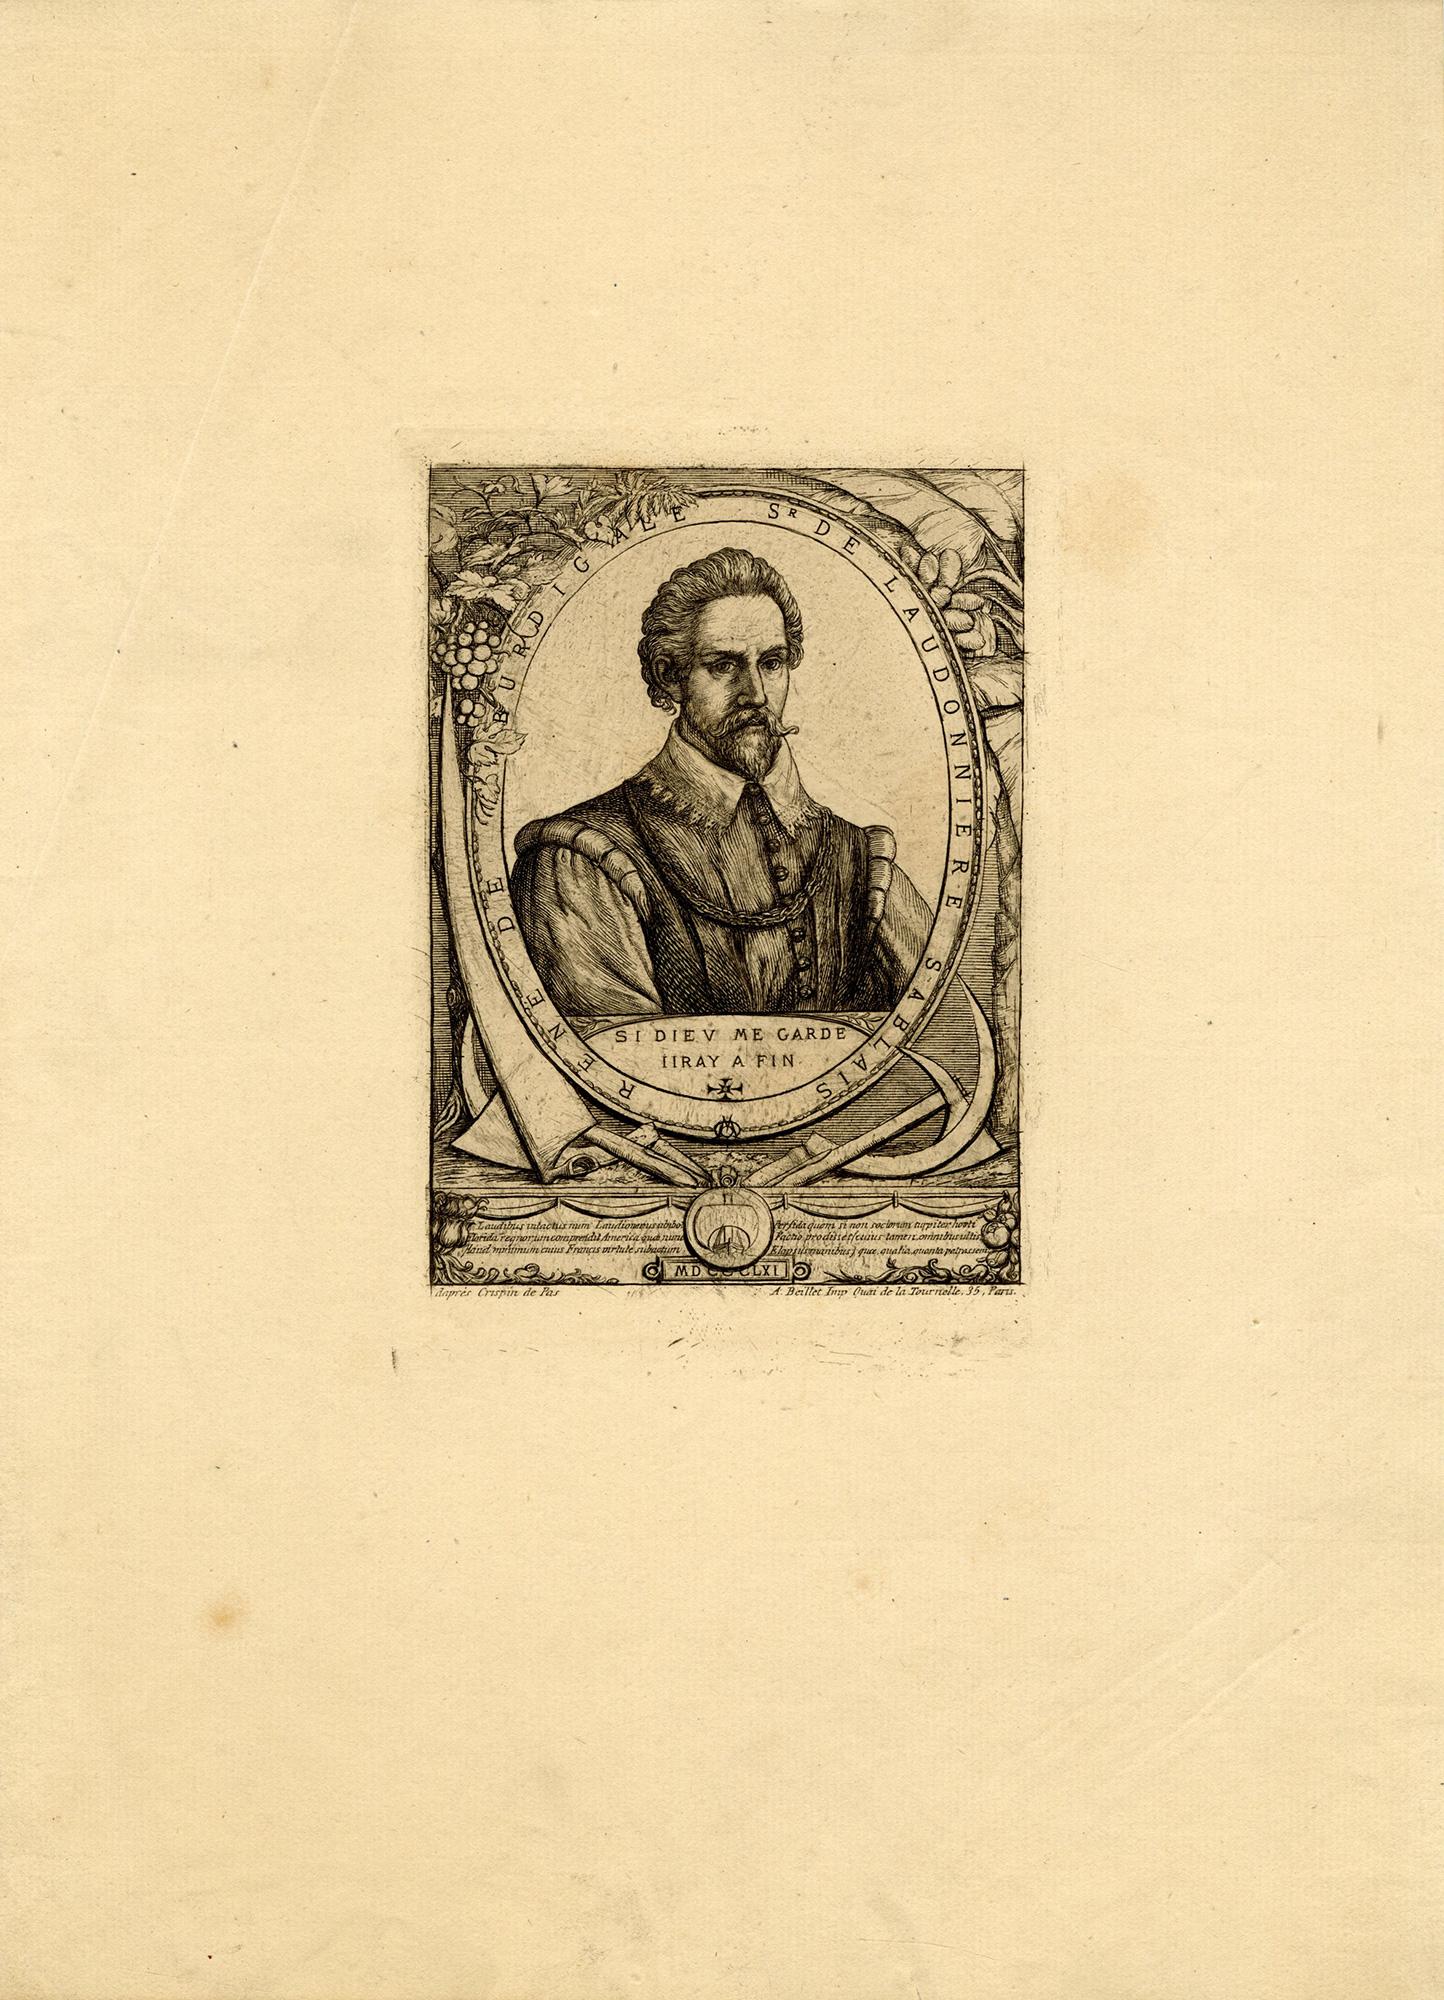 René de Laudonnière Sablais (de Burdigale). After Crispjin van de Passe I - Print by Charles Meryon